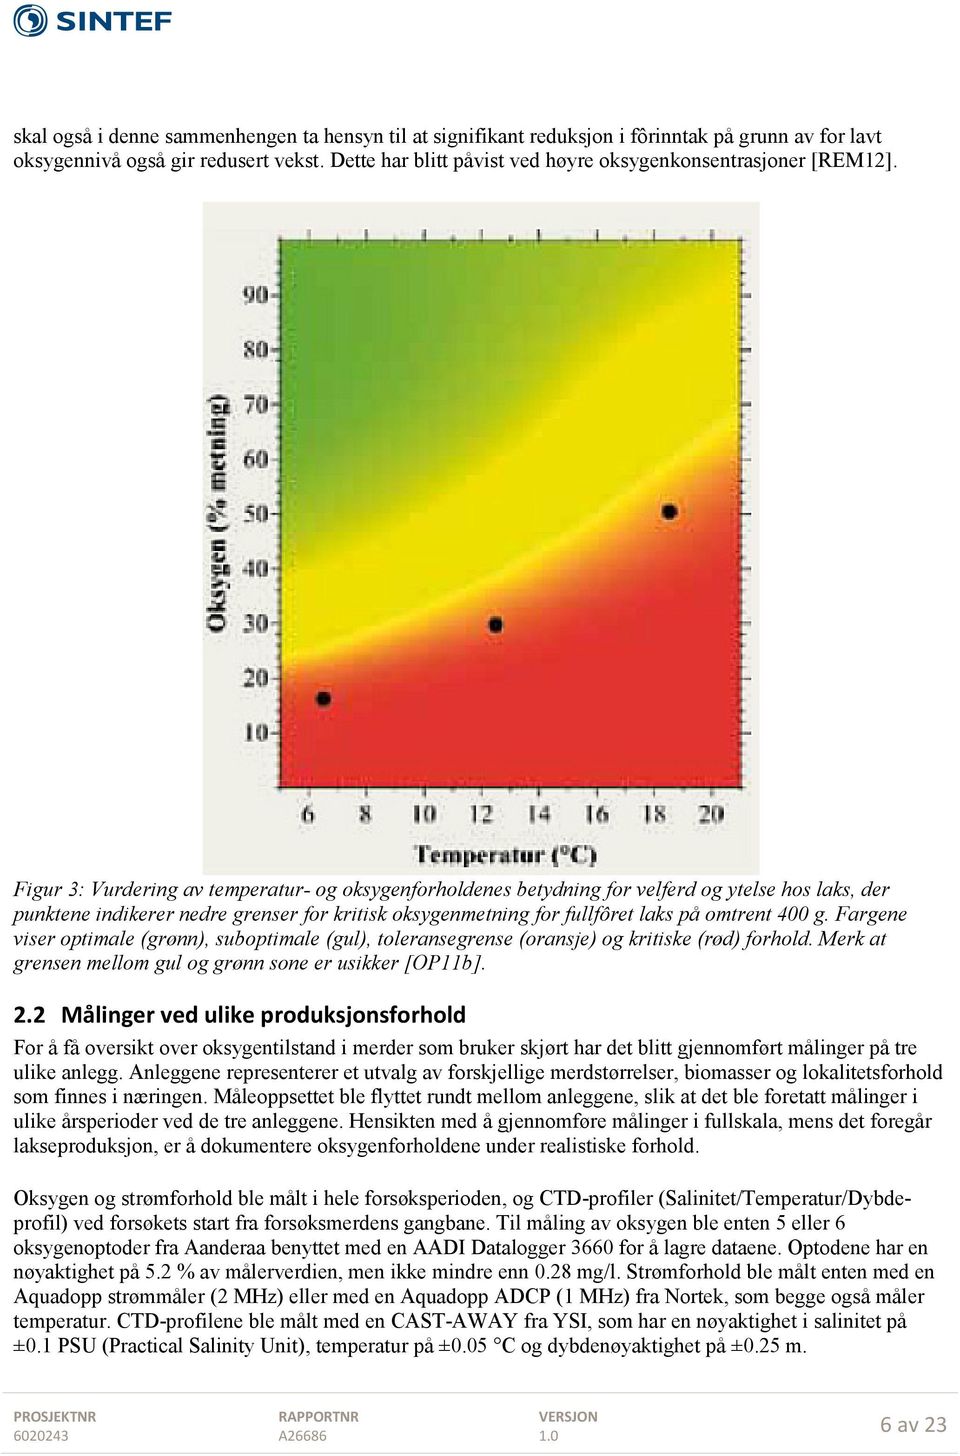 Figur 3: Vurdering av temperatur- og oksygenforholdenes betydning for velferd og ytelse hos laks, der punktene indikerer nedre grenser for kritisk oksygenmetning for fullfôret laks på omtrent 400 g.